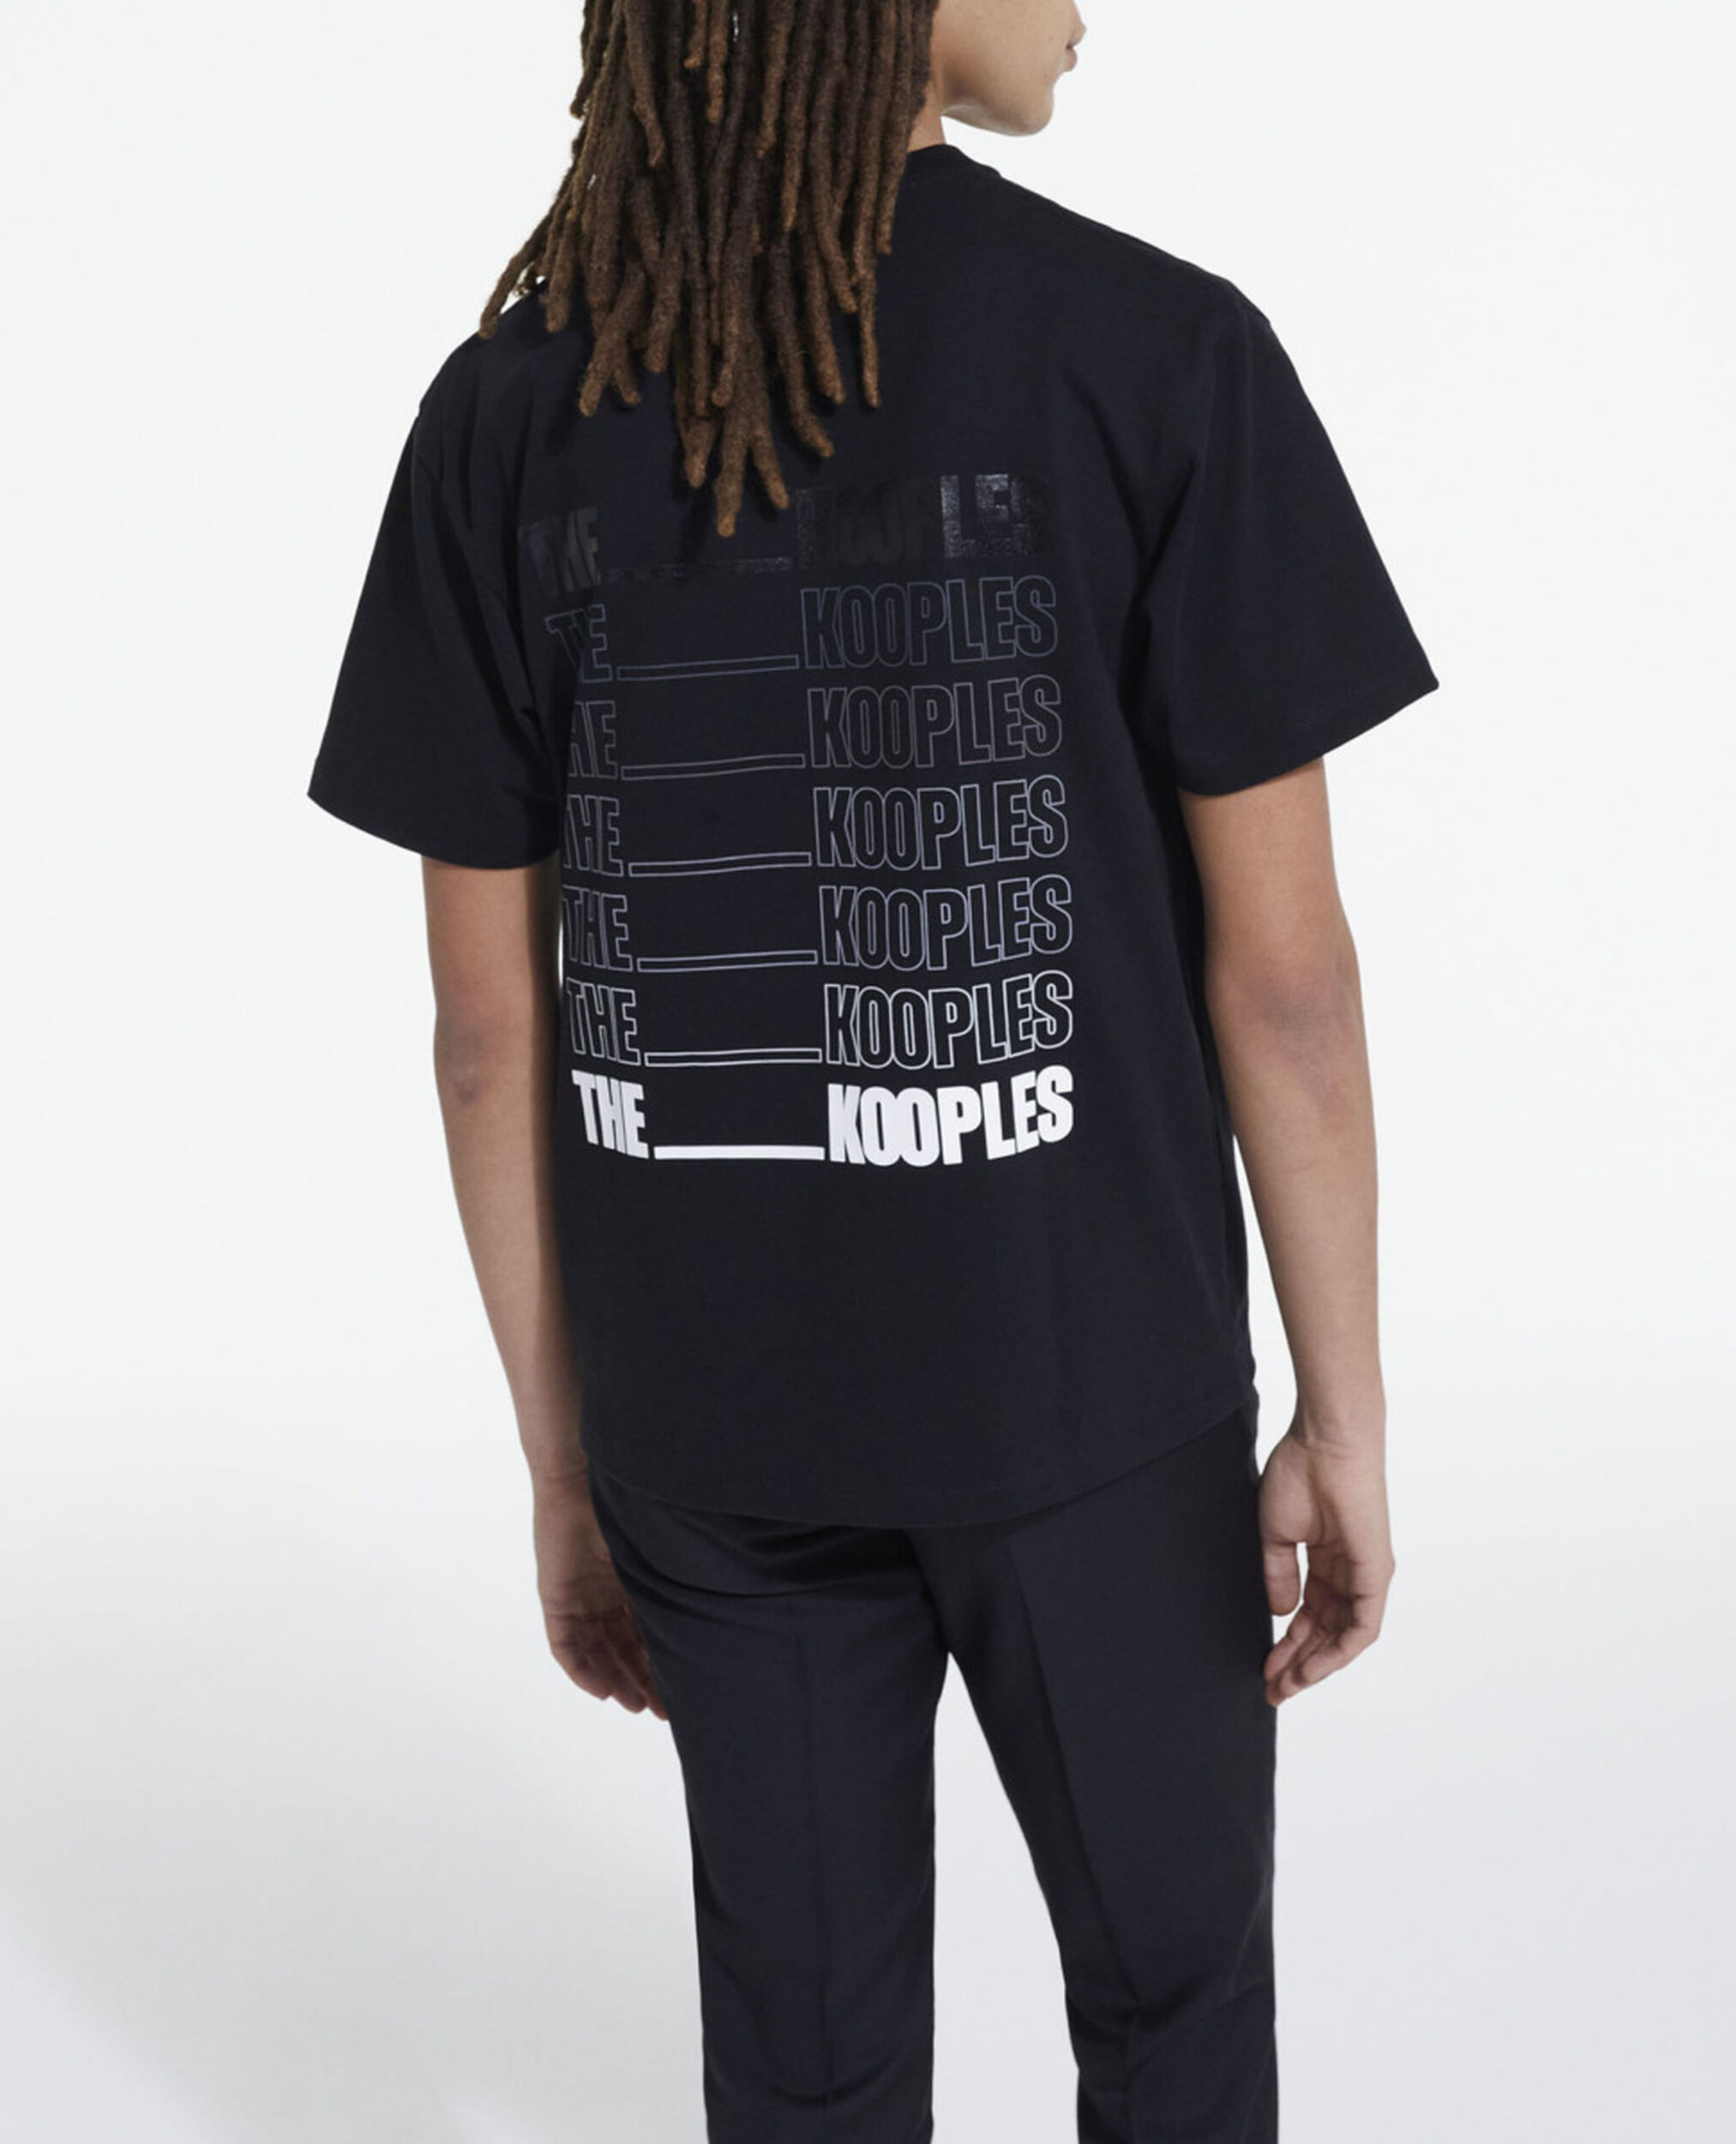 Schwarzes T-Shirt mit The Kooples Logo, BLACK, hi-res image number null